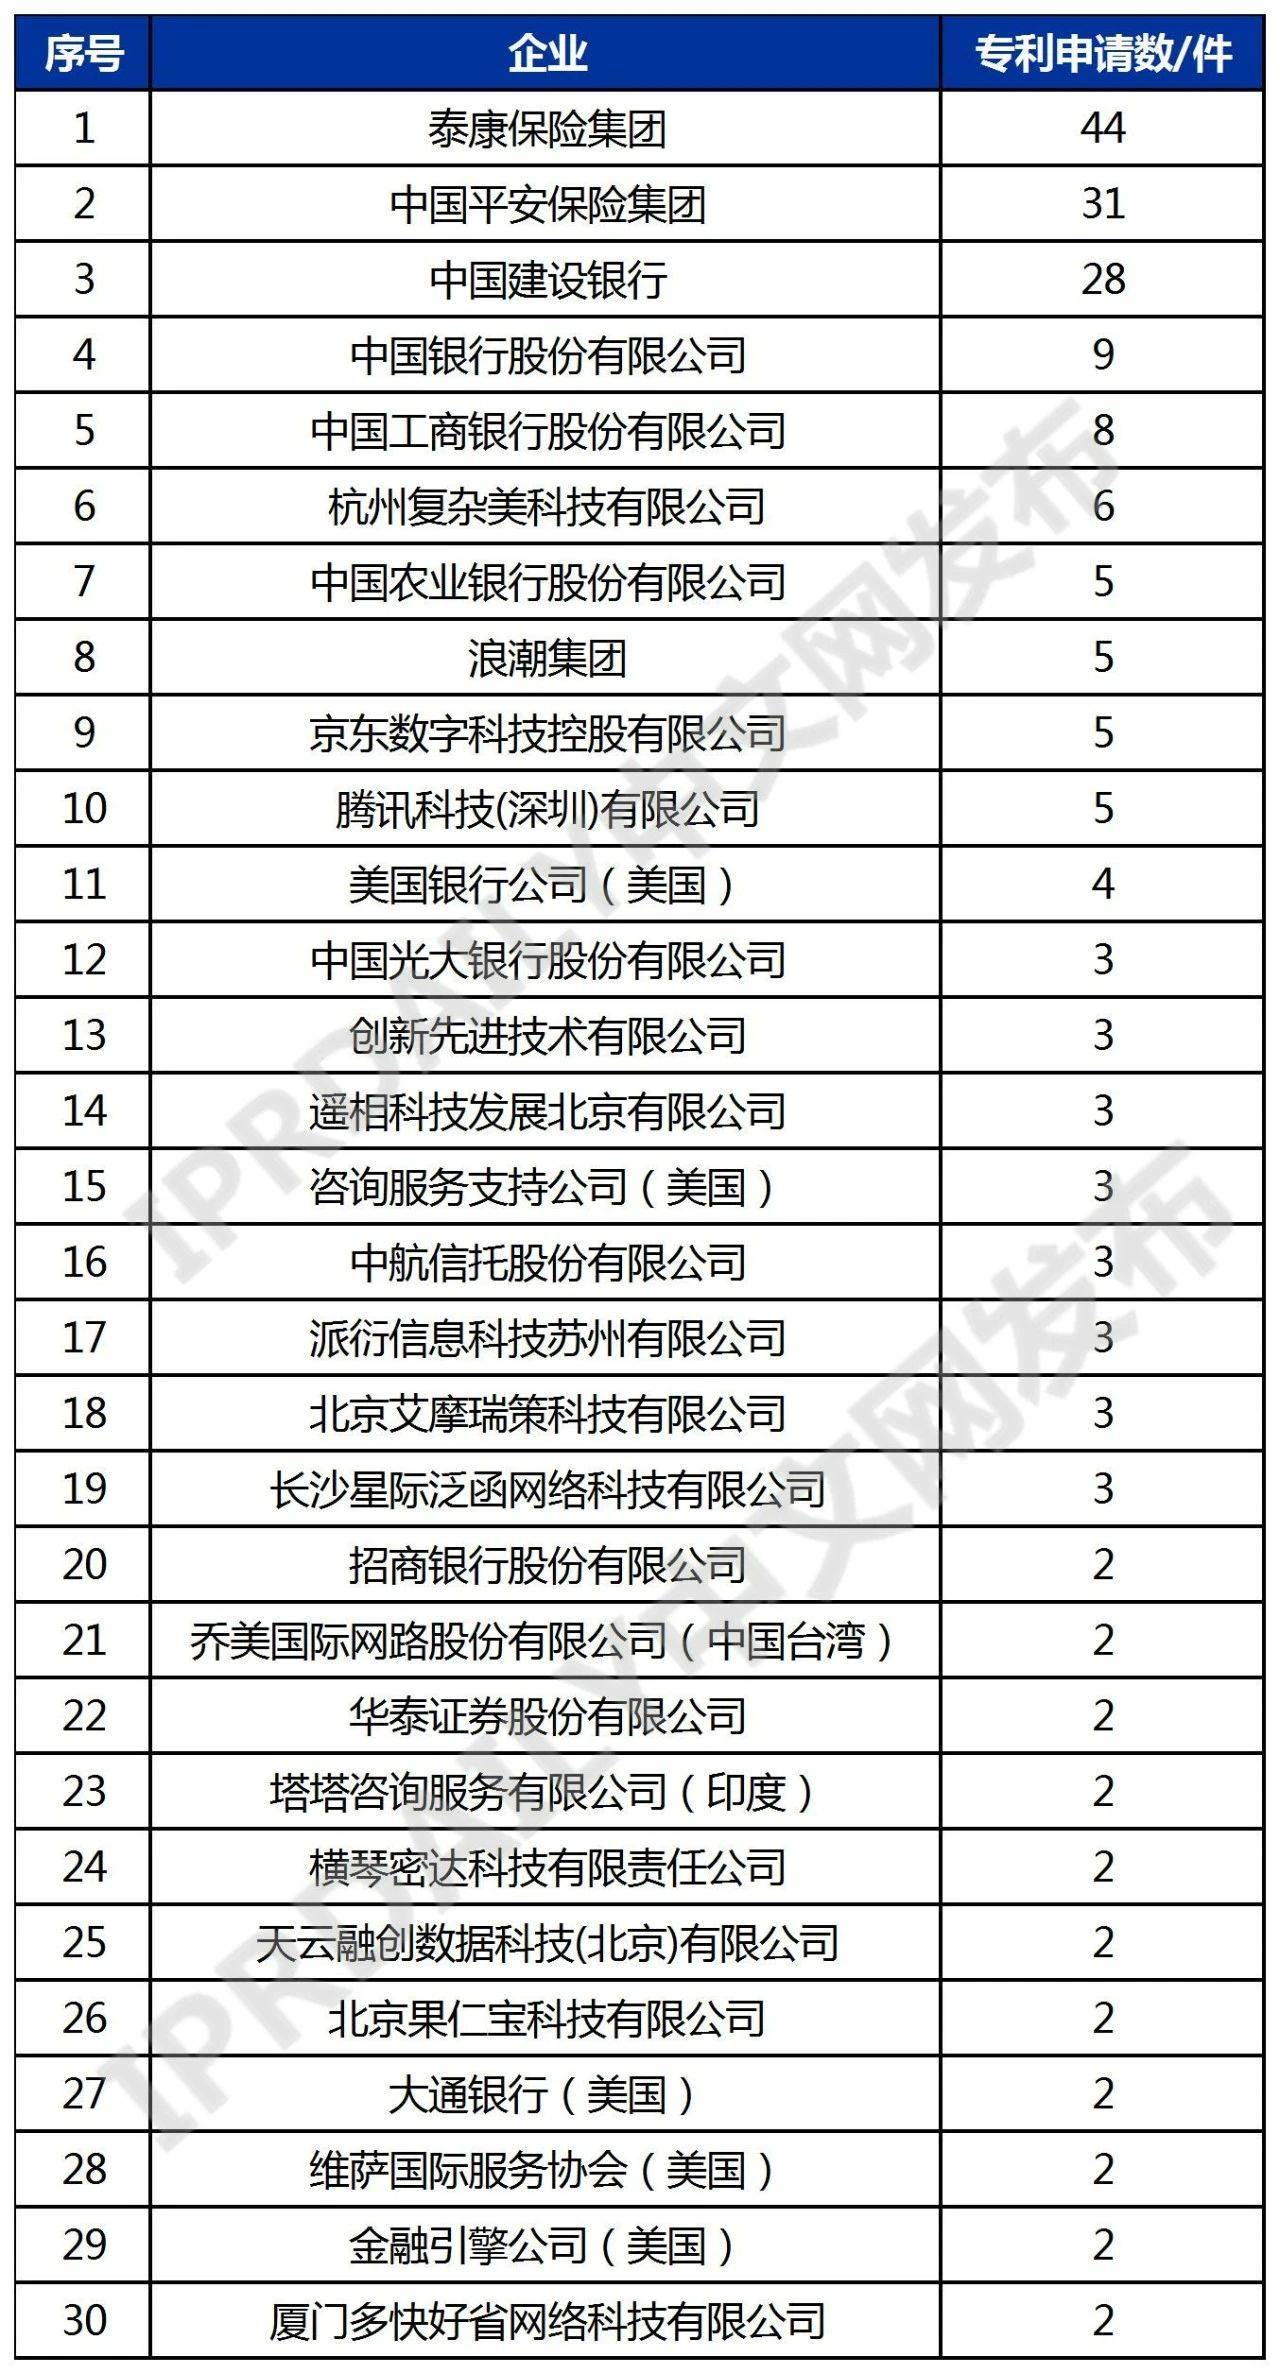 中国年金科技专利排行榜（TOP30）